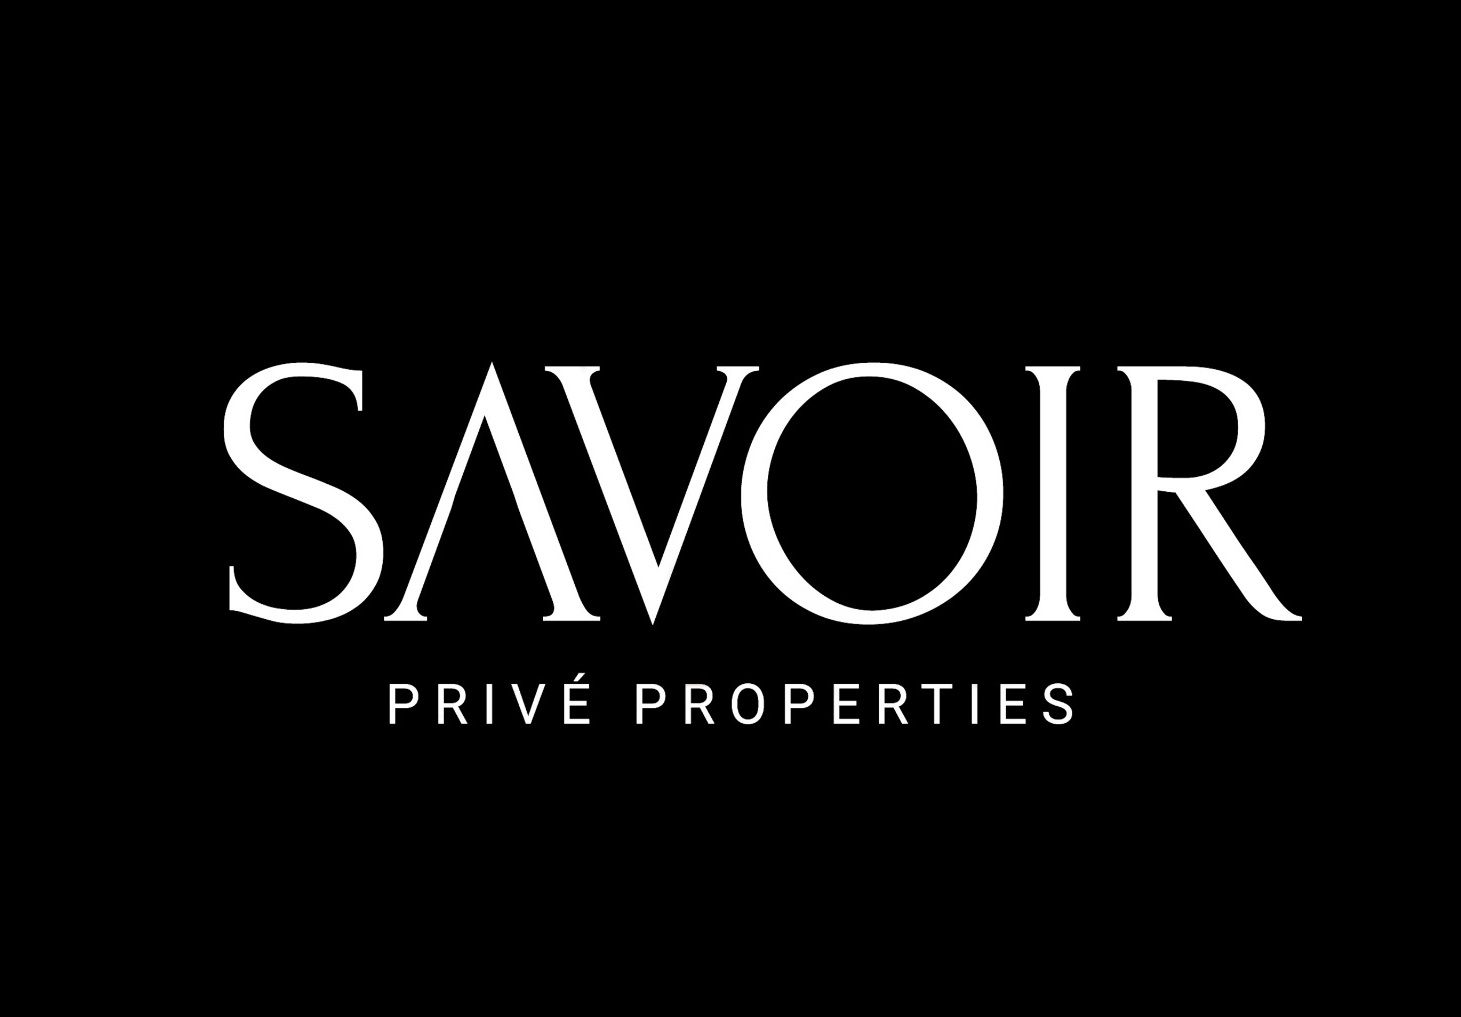 Savoir Prive Properties